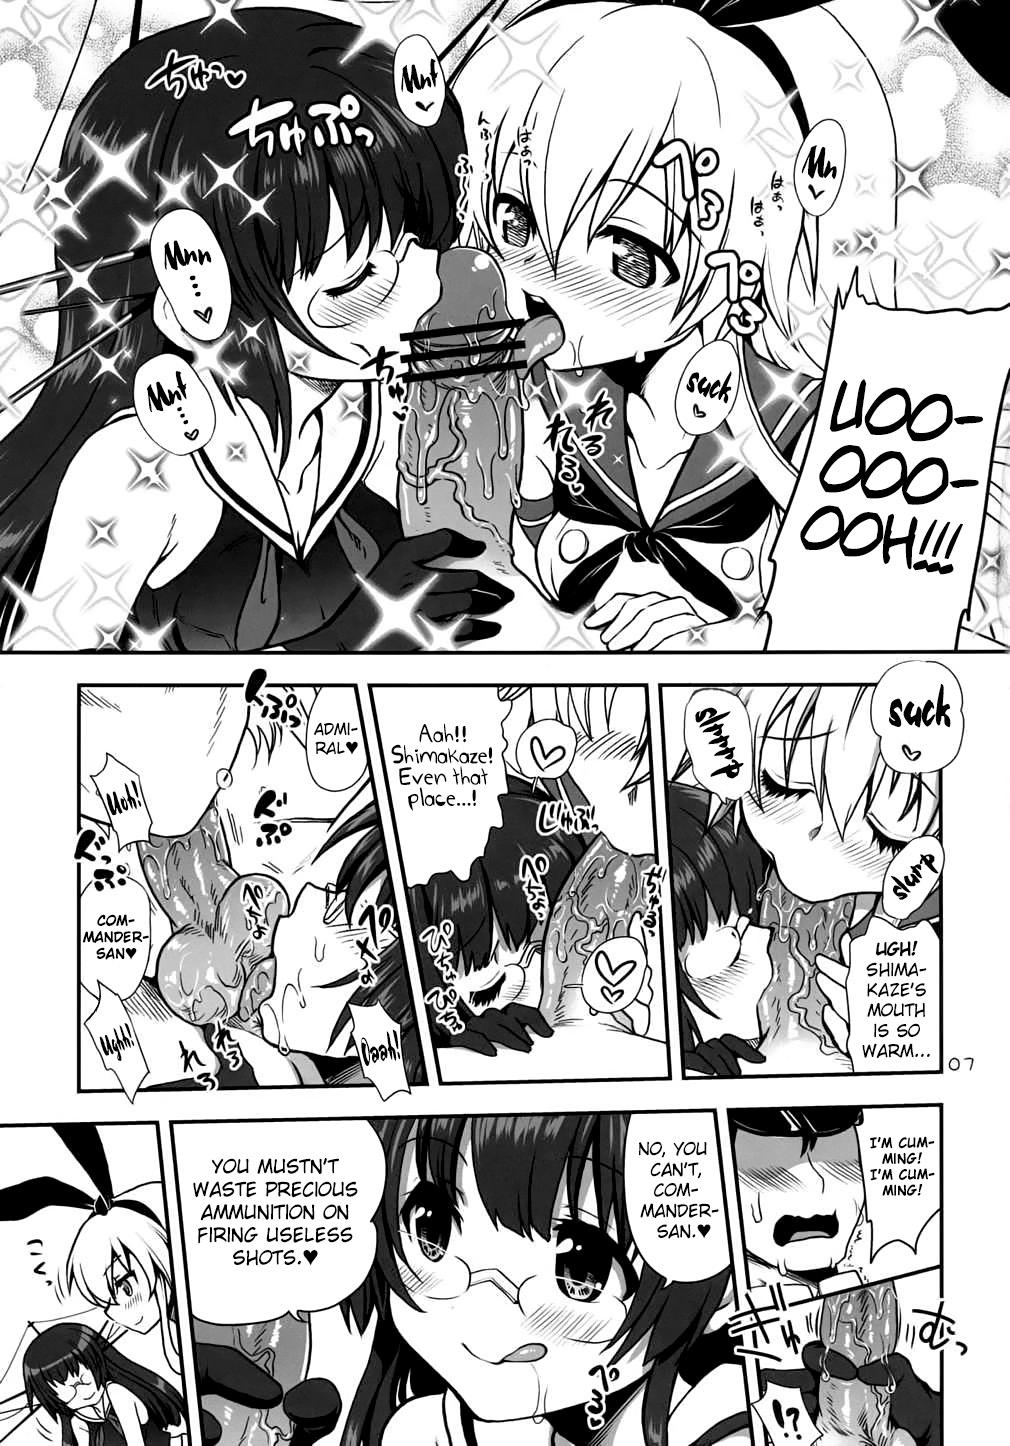 Sentones a hack aim you Shimakaze Choukai no Daisakusen! Maya-sama o Kaijuu seyo!! - Kantai collection Rough Sex - Page 6